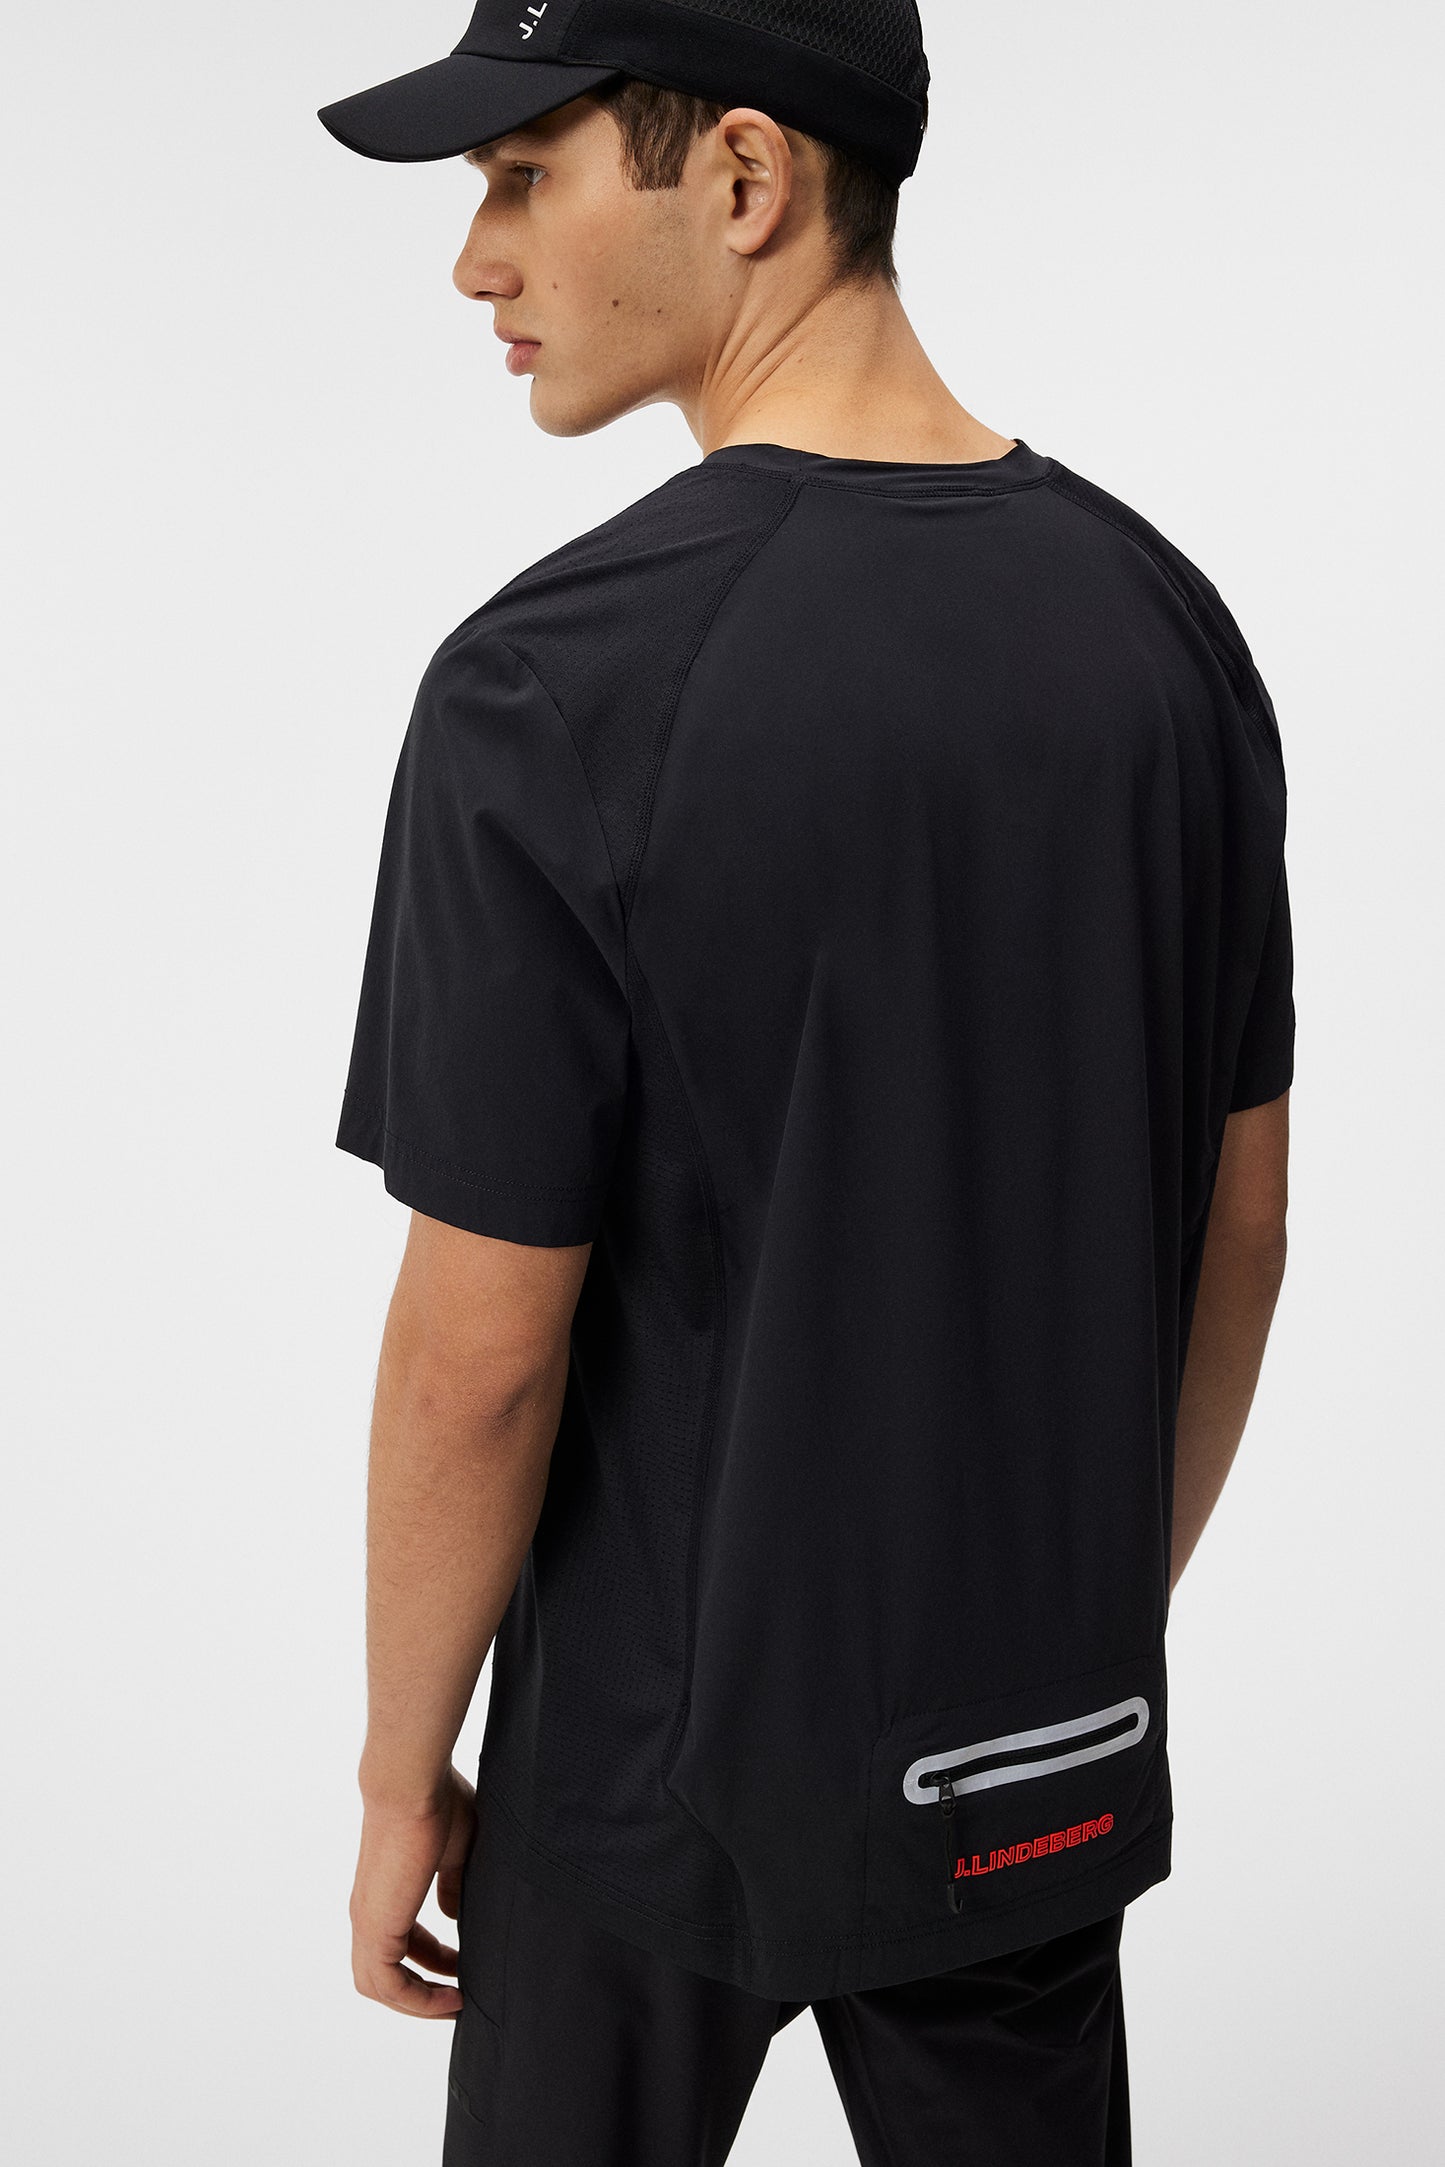 Tomas Pro Pack T-Shirt / Black